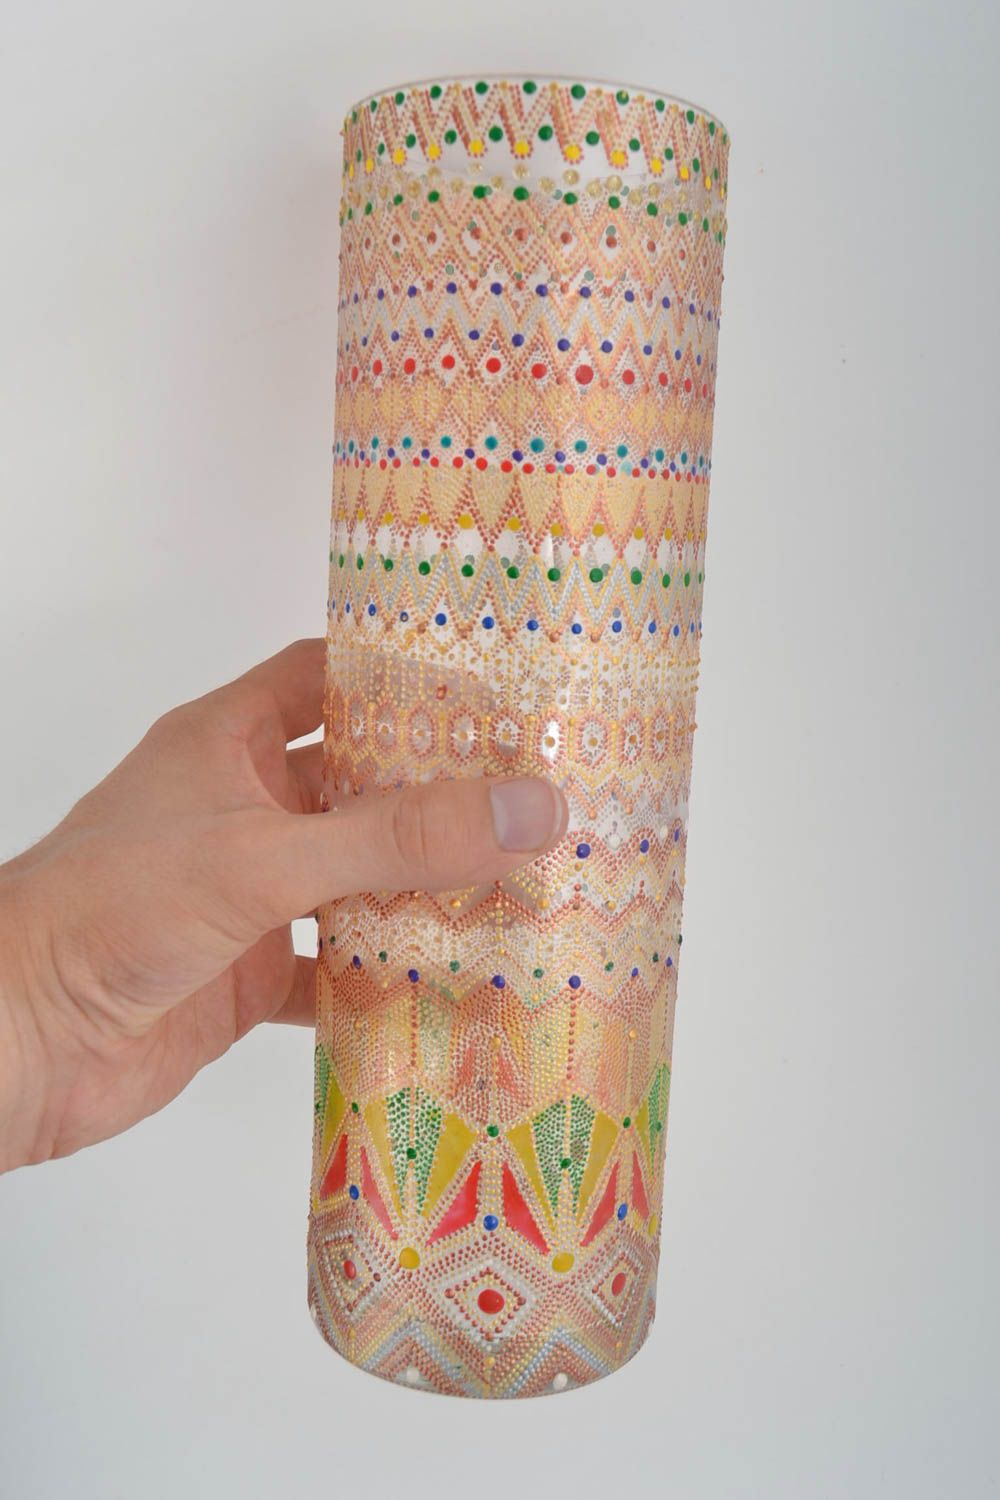 Стеклянная ваза ручной работ ваза для цветов ваза в интерьере 1.5 л расписная фото 5